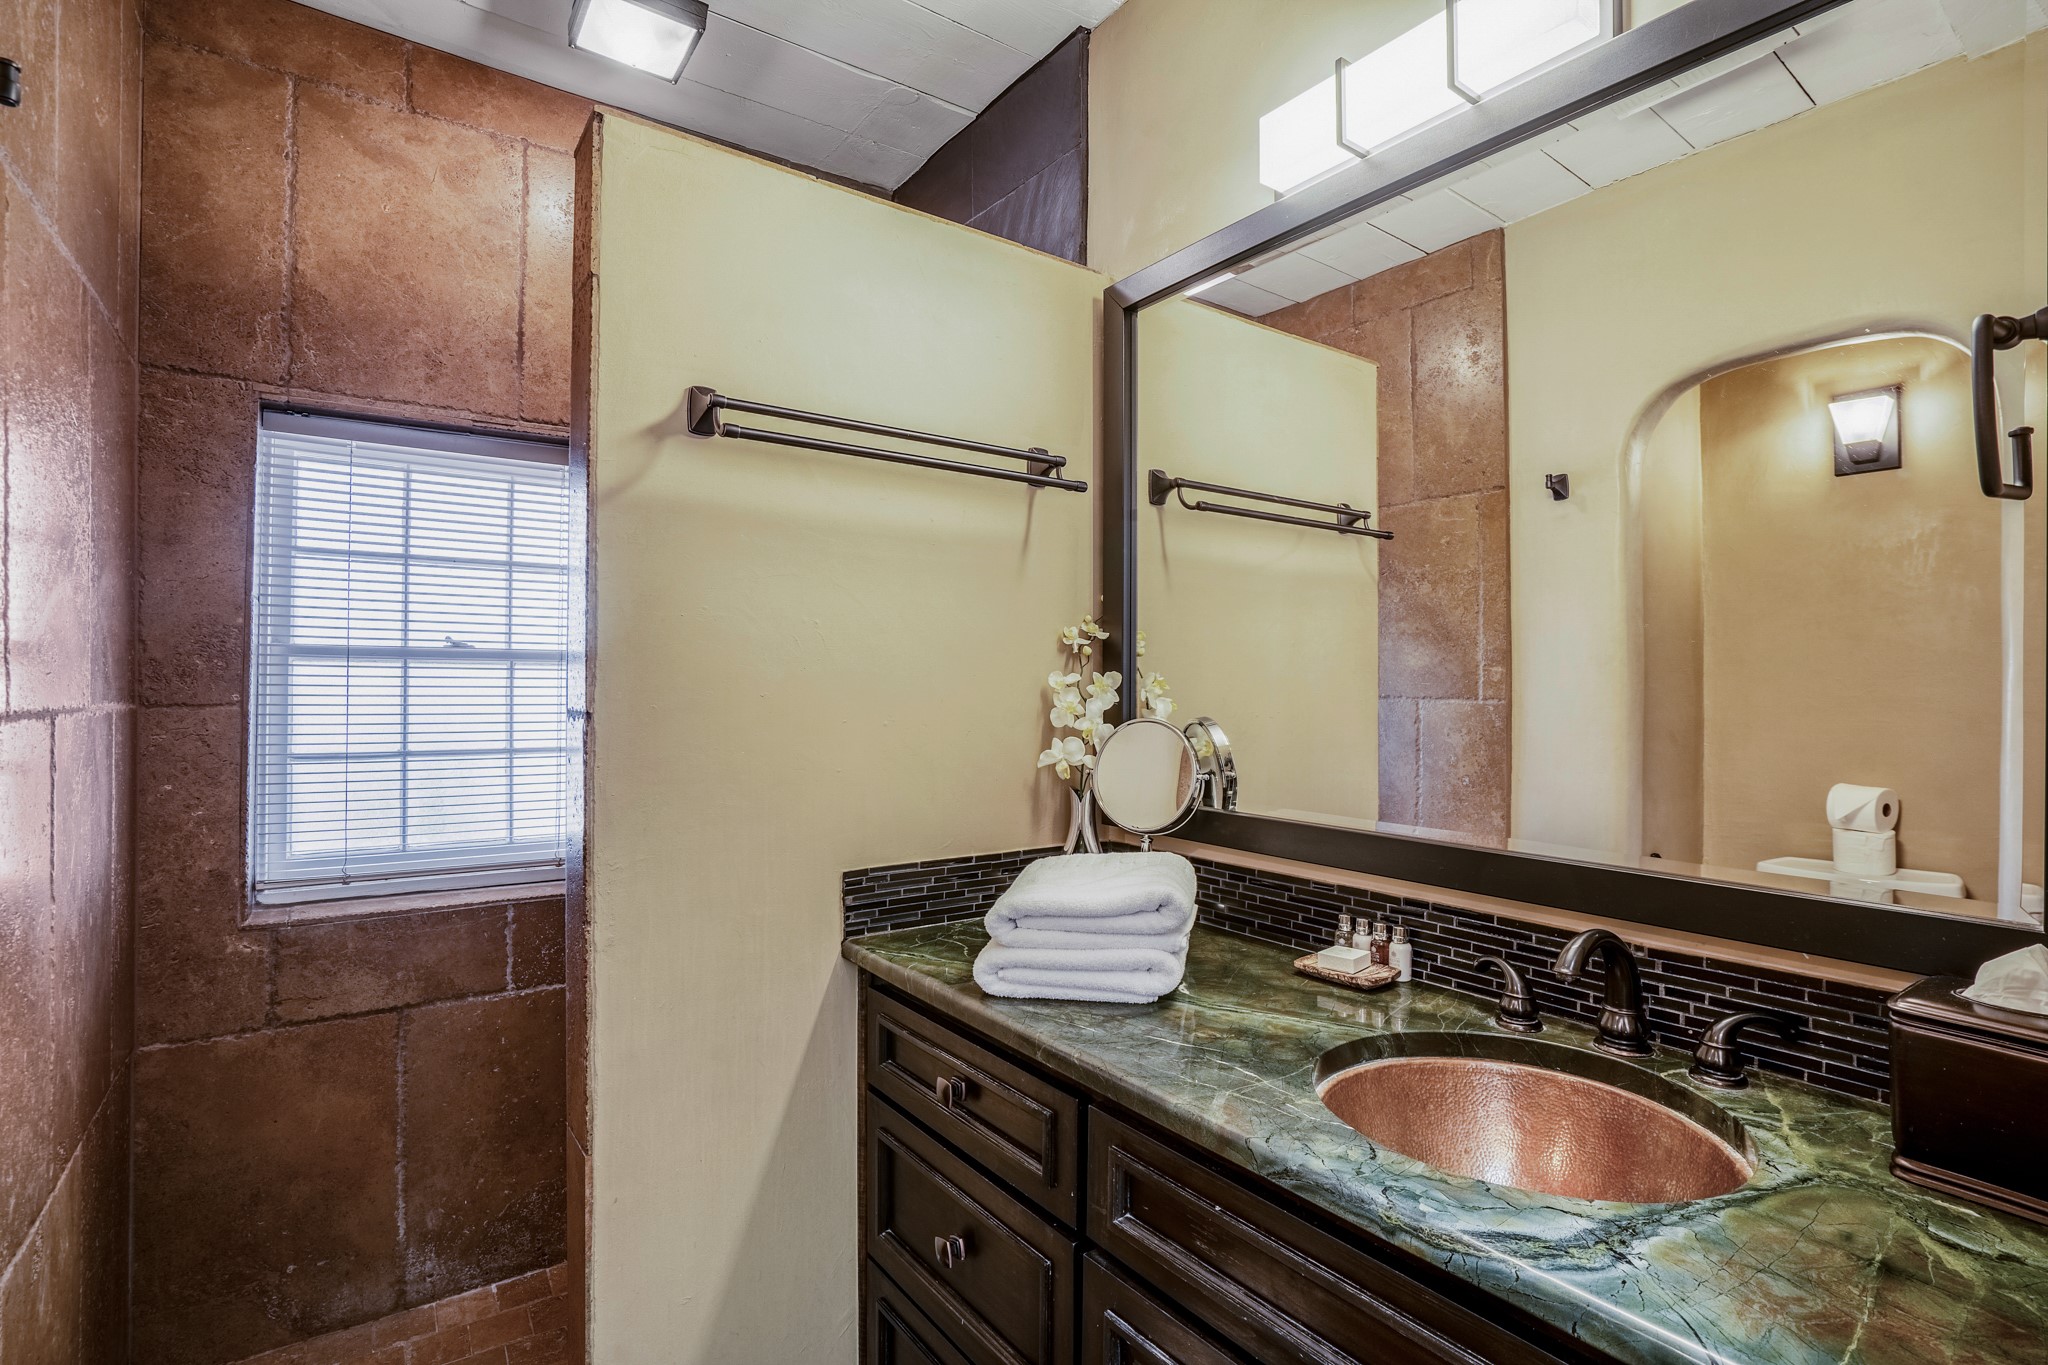 113 Camino Escondido 2, Santa Fe, New Mexico 87501, ,1 BathroomBathrooms,Residential,For Sale,113 Camino Escondido 2,202337840